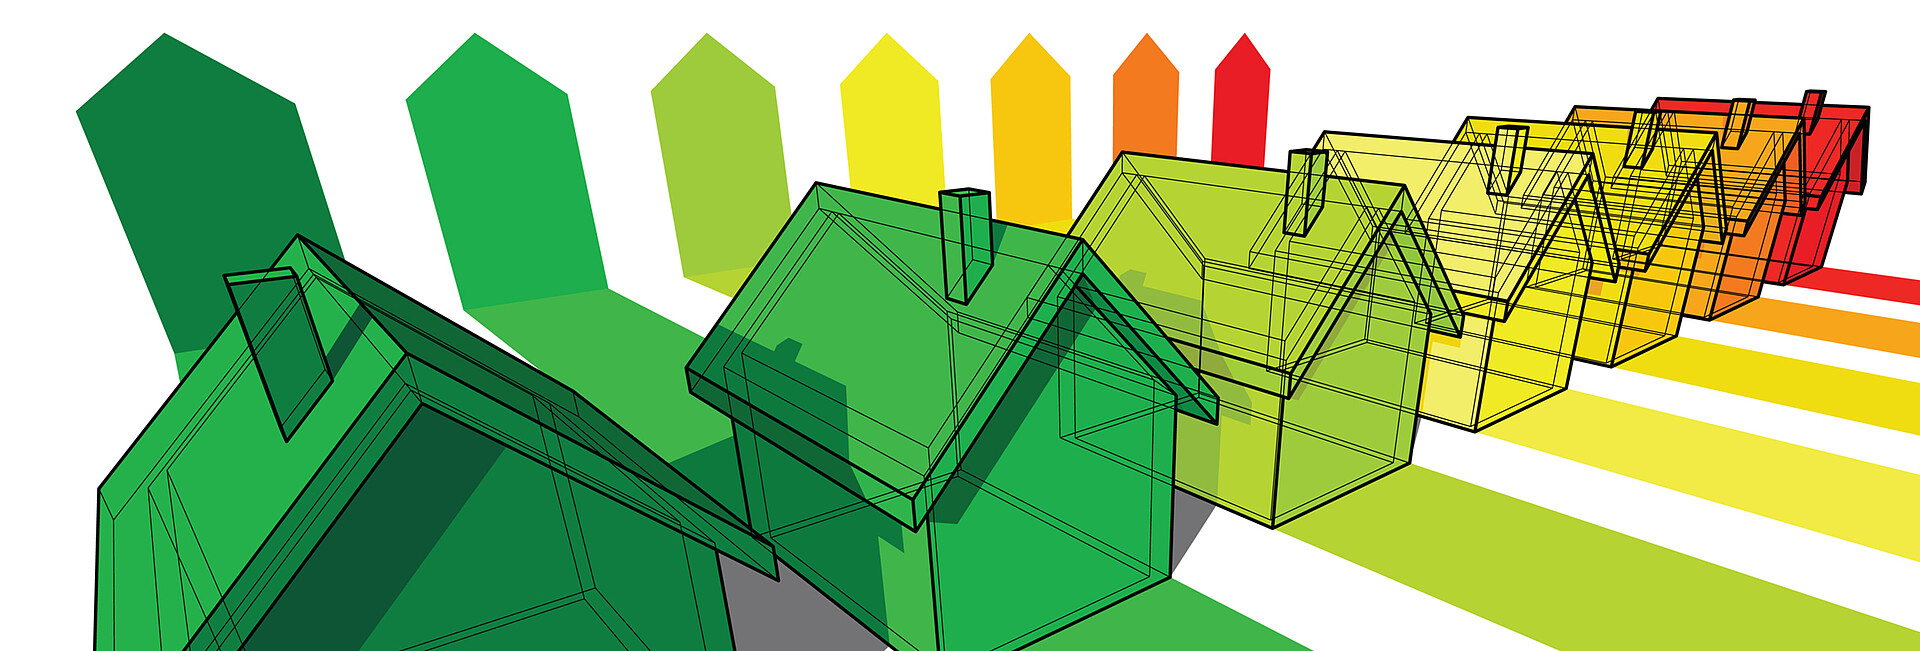 Symboldbild Wärmeenergie zeigt Zeichnungen von Häusern, die im Farbverlauf grün , gelb und rot eingefärbt wurden